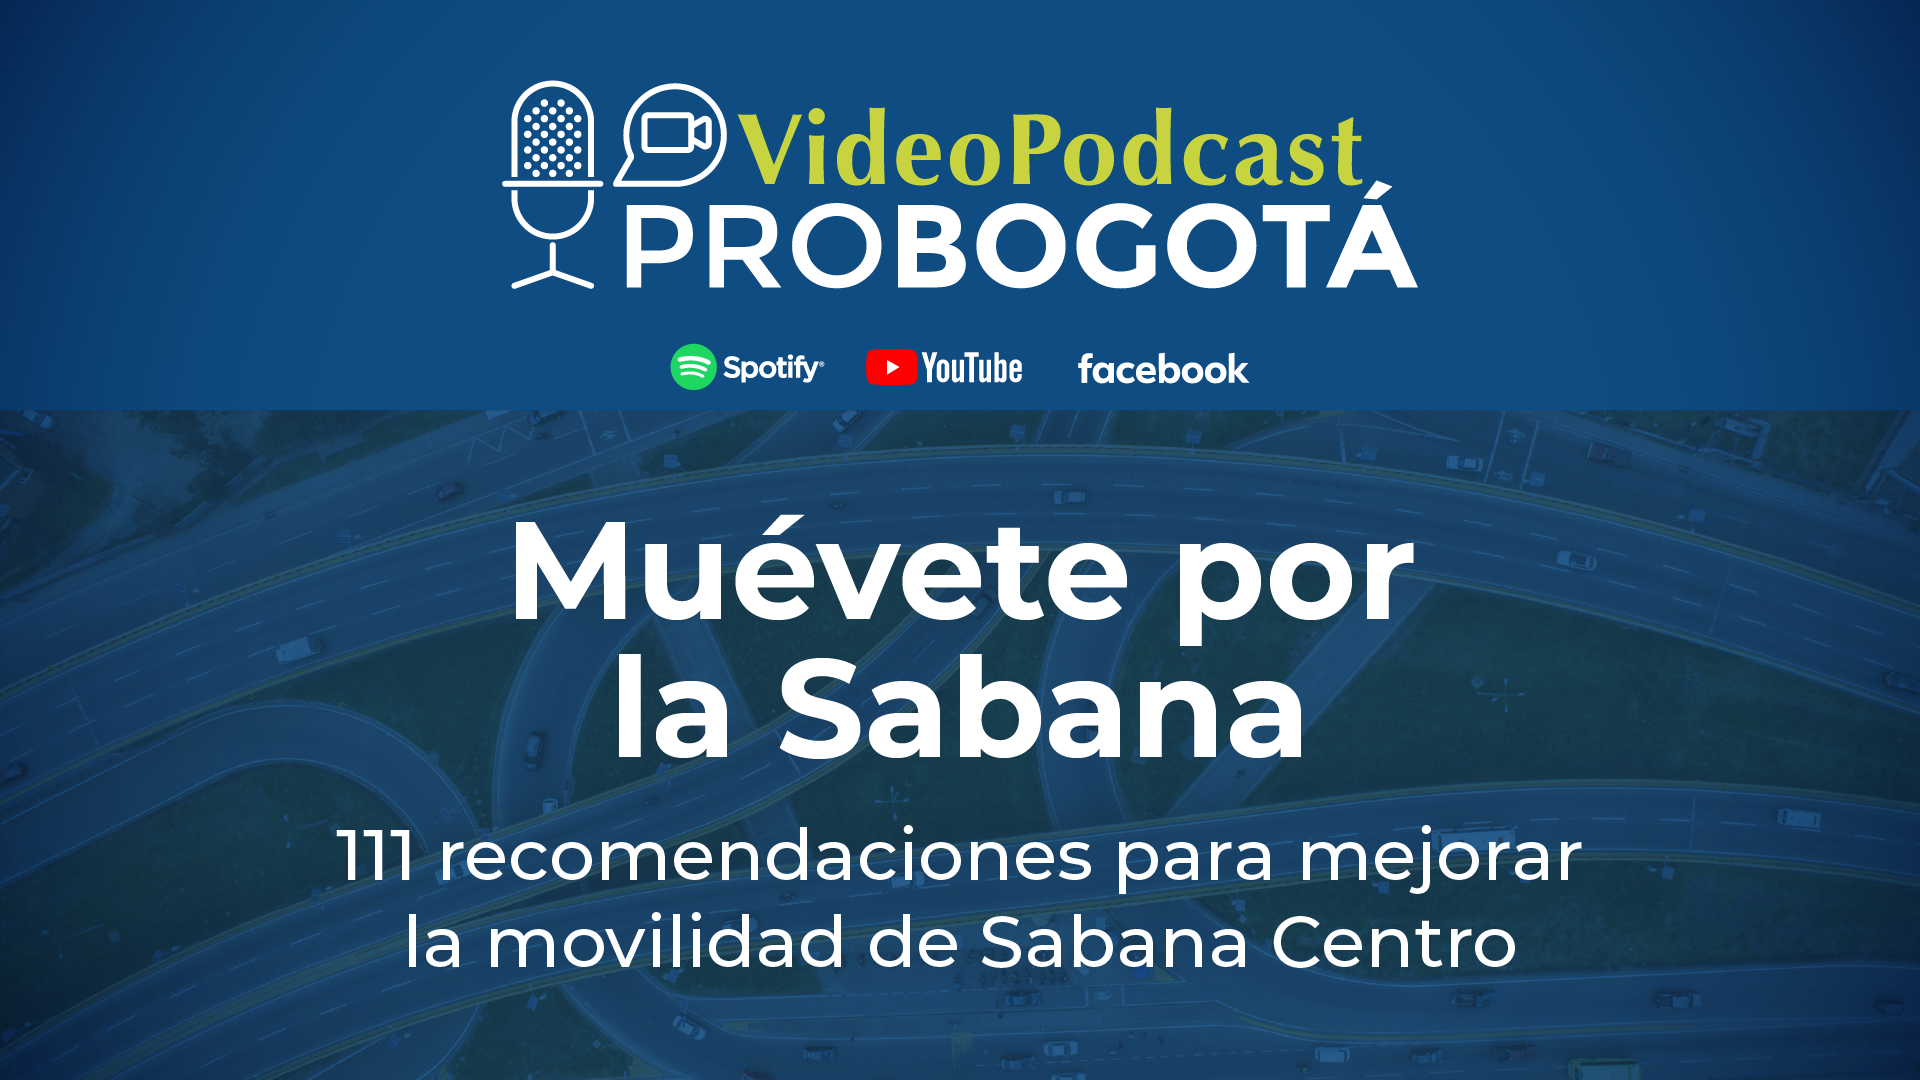 Muévete por la Sabana, 111 recomendaciones para mejorar la movilidad en Sabana Centro